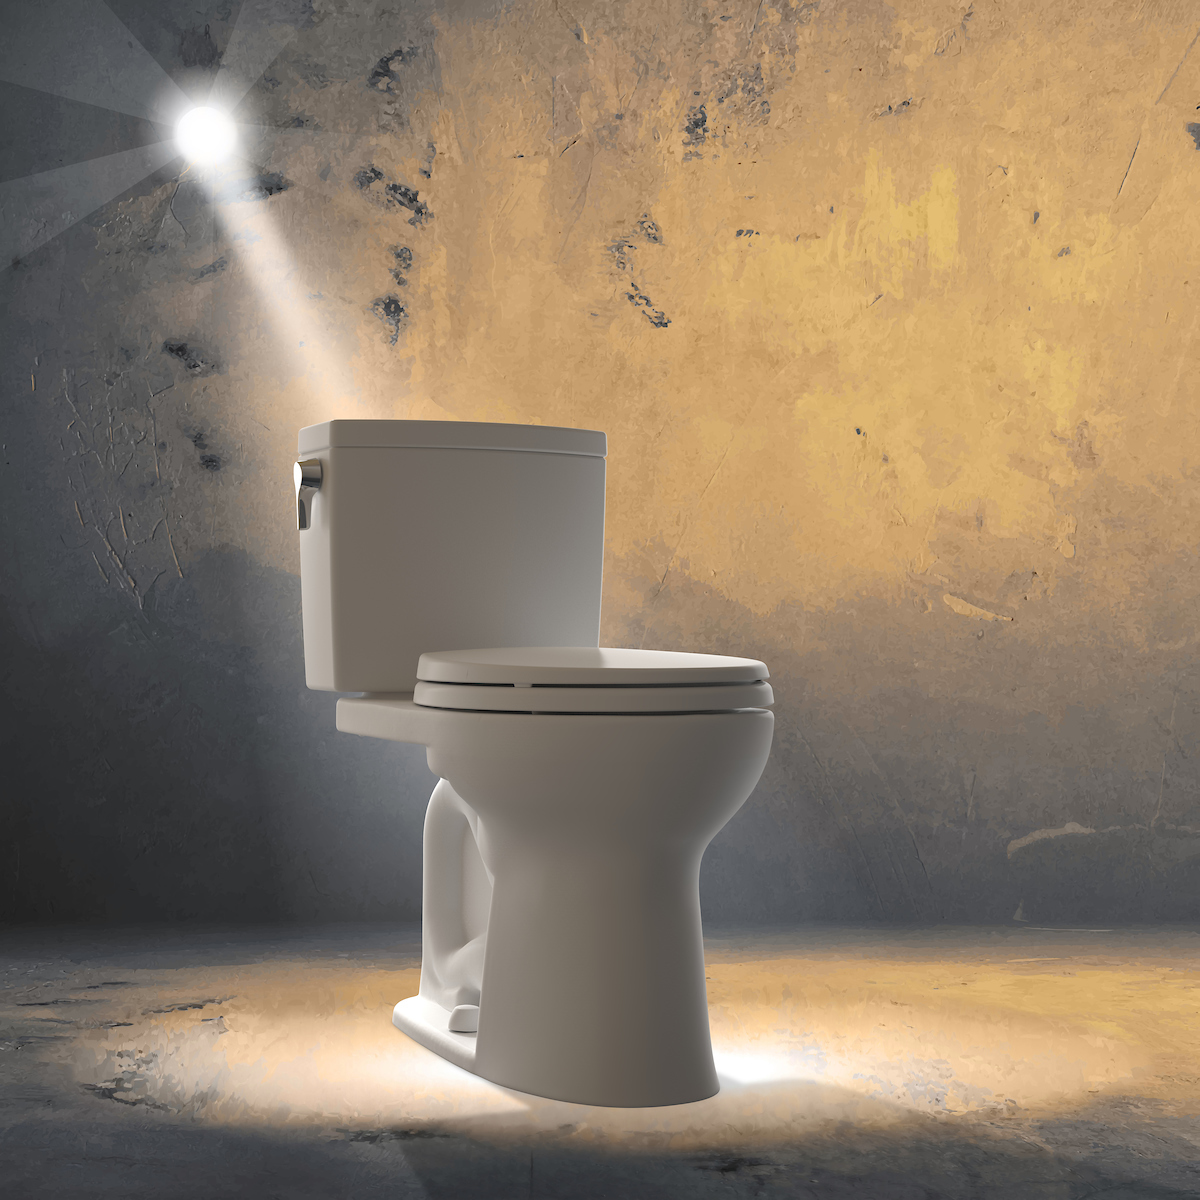 WC o inodoro? Descubre las diferencias sutiles entre estos términos – Blog  Muebles Para Baño